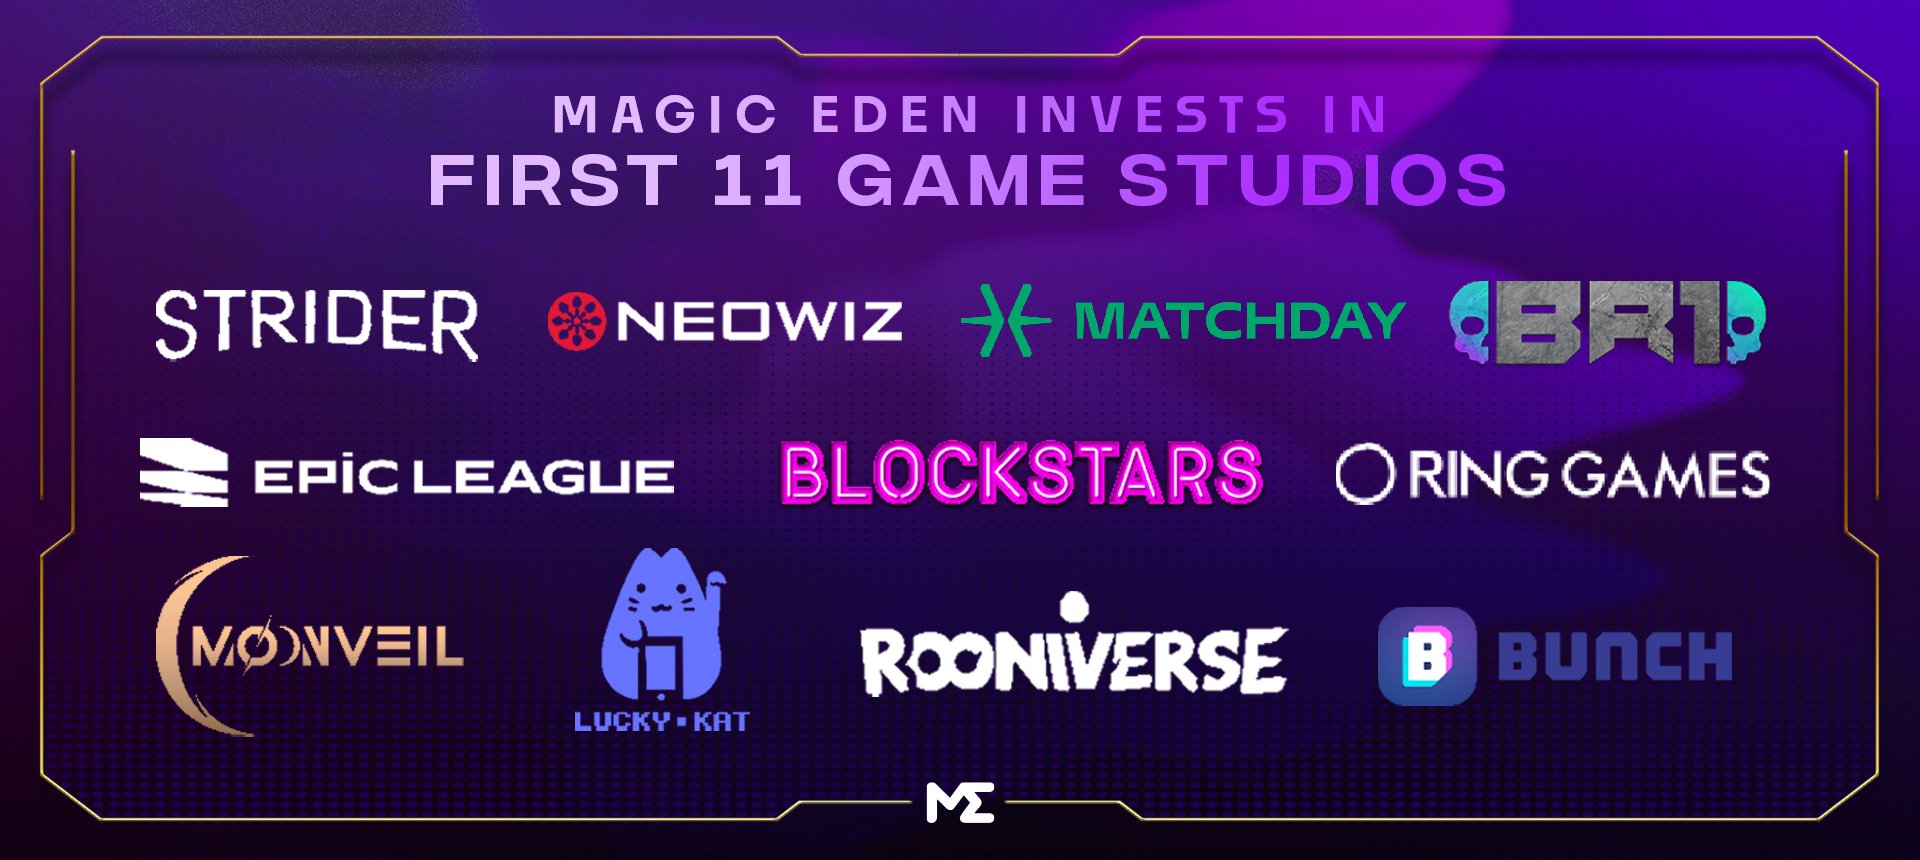 速覽Magic Eden投資的11家Web3遊戲工作室